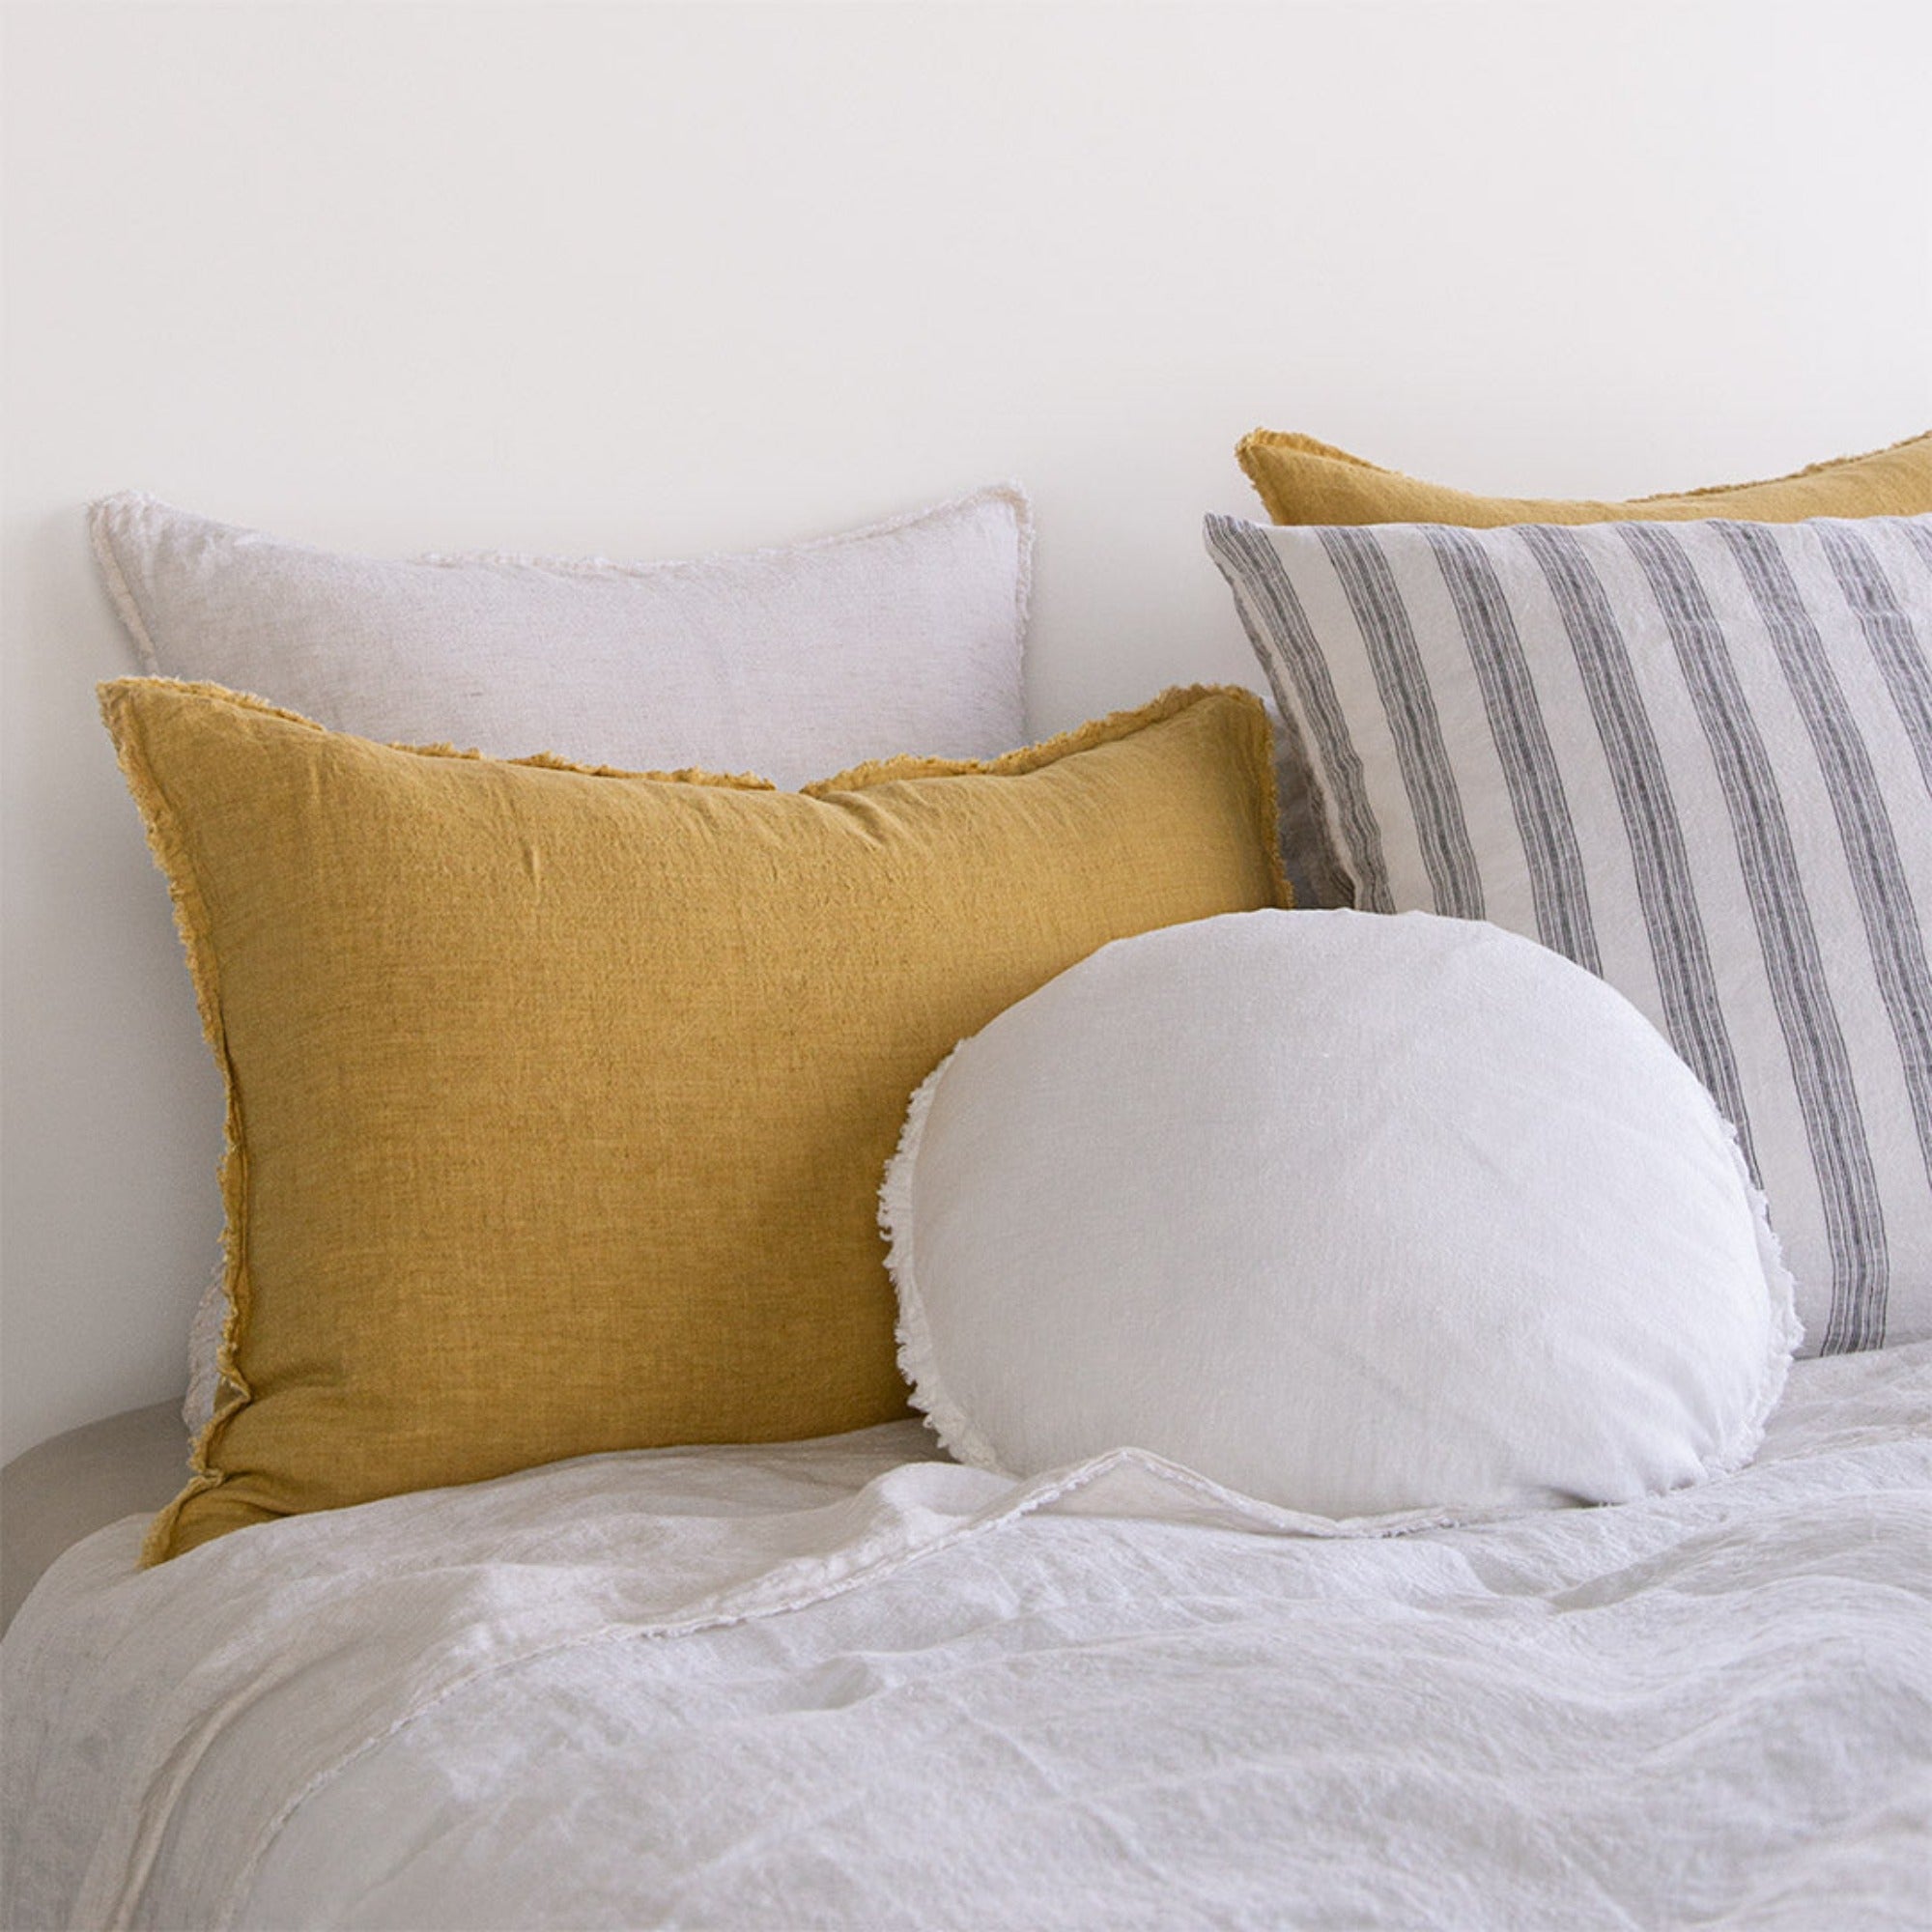 Round Linen Pillow | Antique White | Hale Mercantile Co.